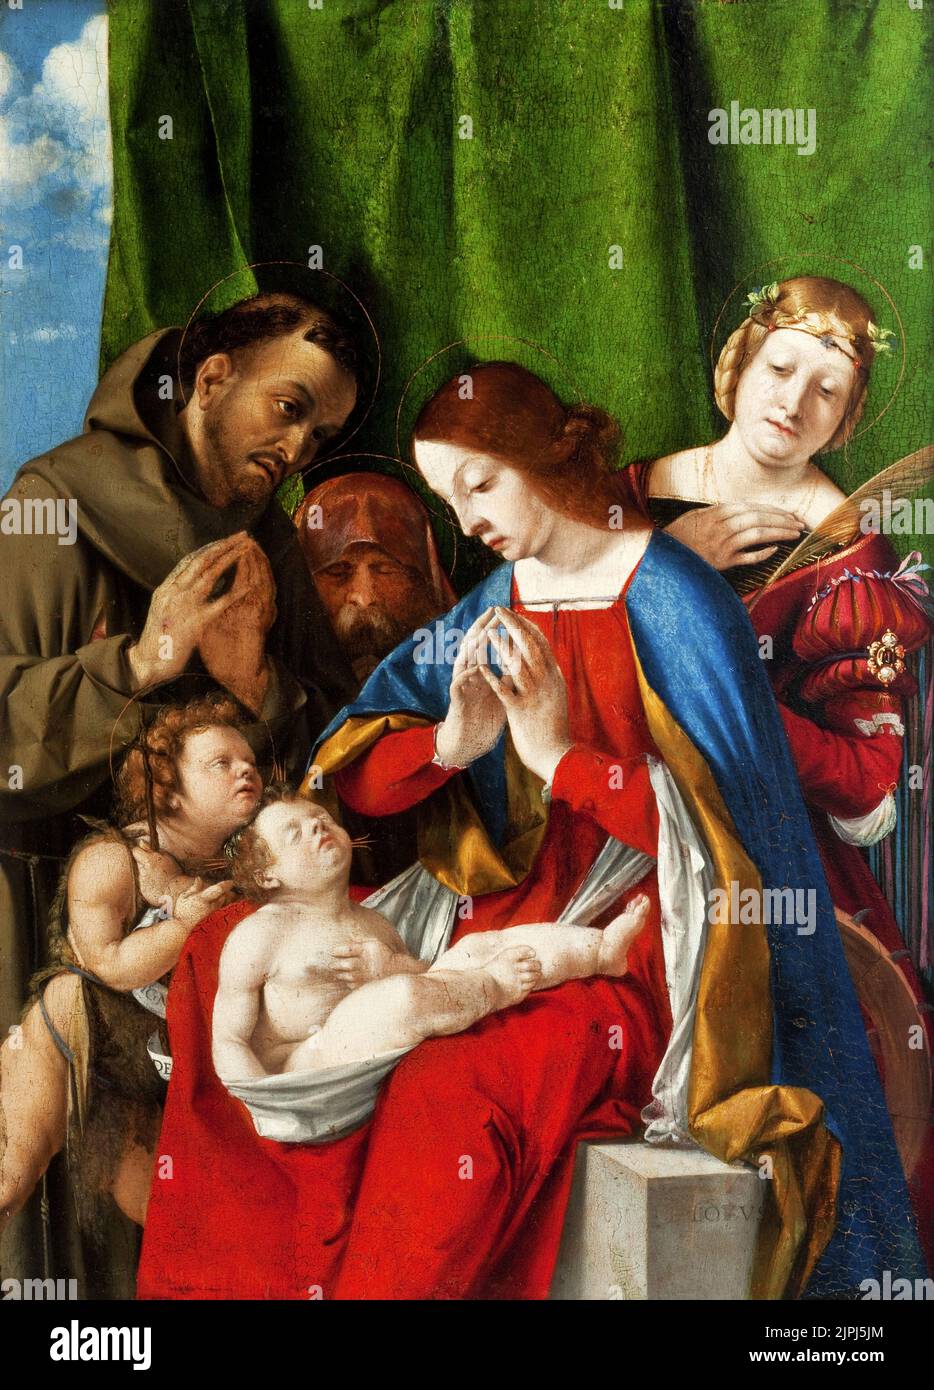 L'adoration de l'enfant, (c. 1508), peinture de Lorenzo Lotto Banque D'Images